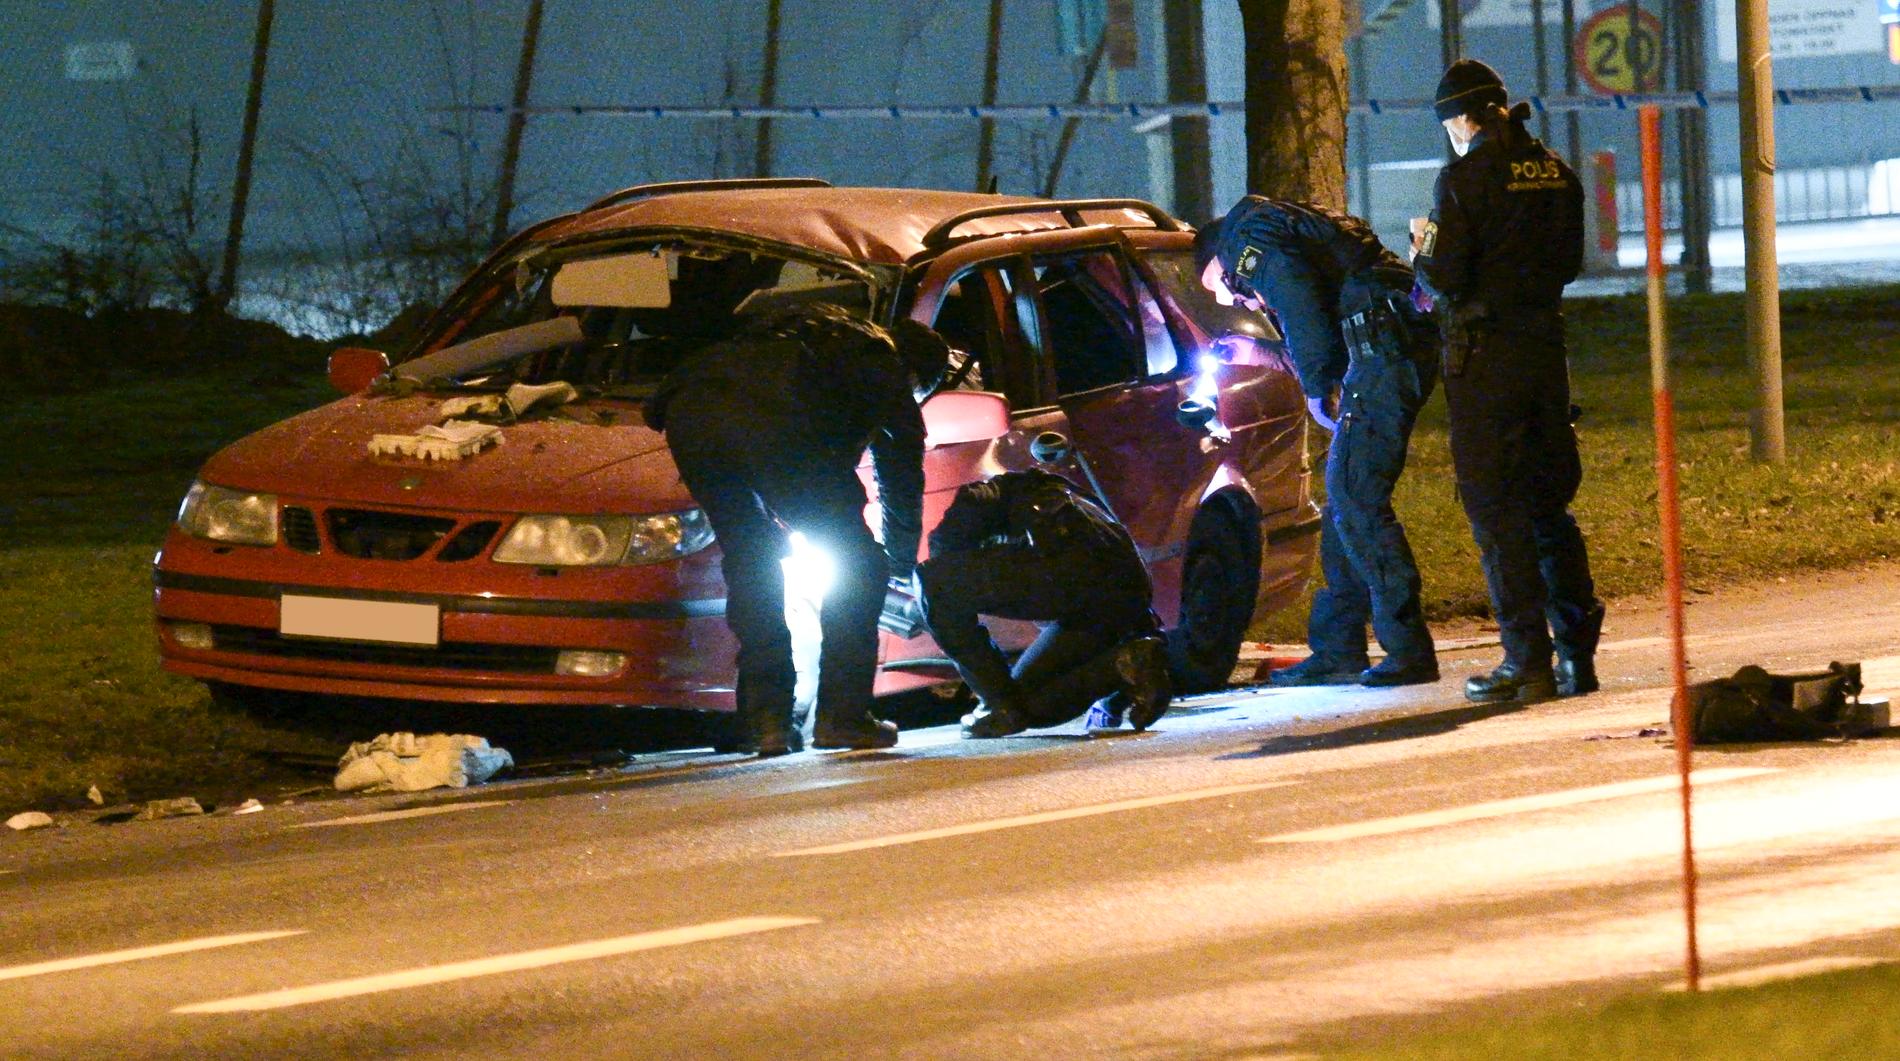 Polisens bomb- och kriminaltekniker undersöker bilen efter en misstänkt explosion i Kristianstad natten till måndag.